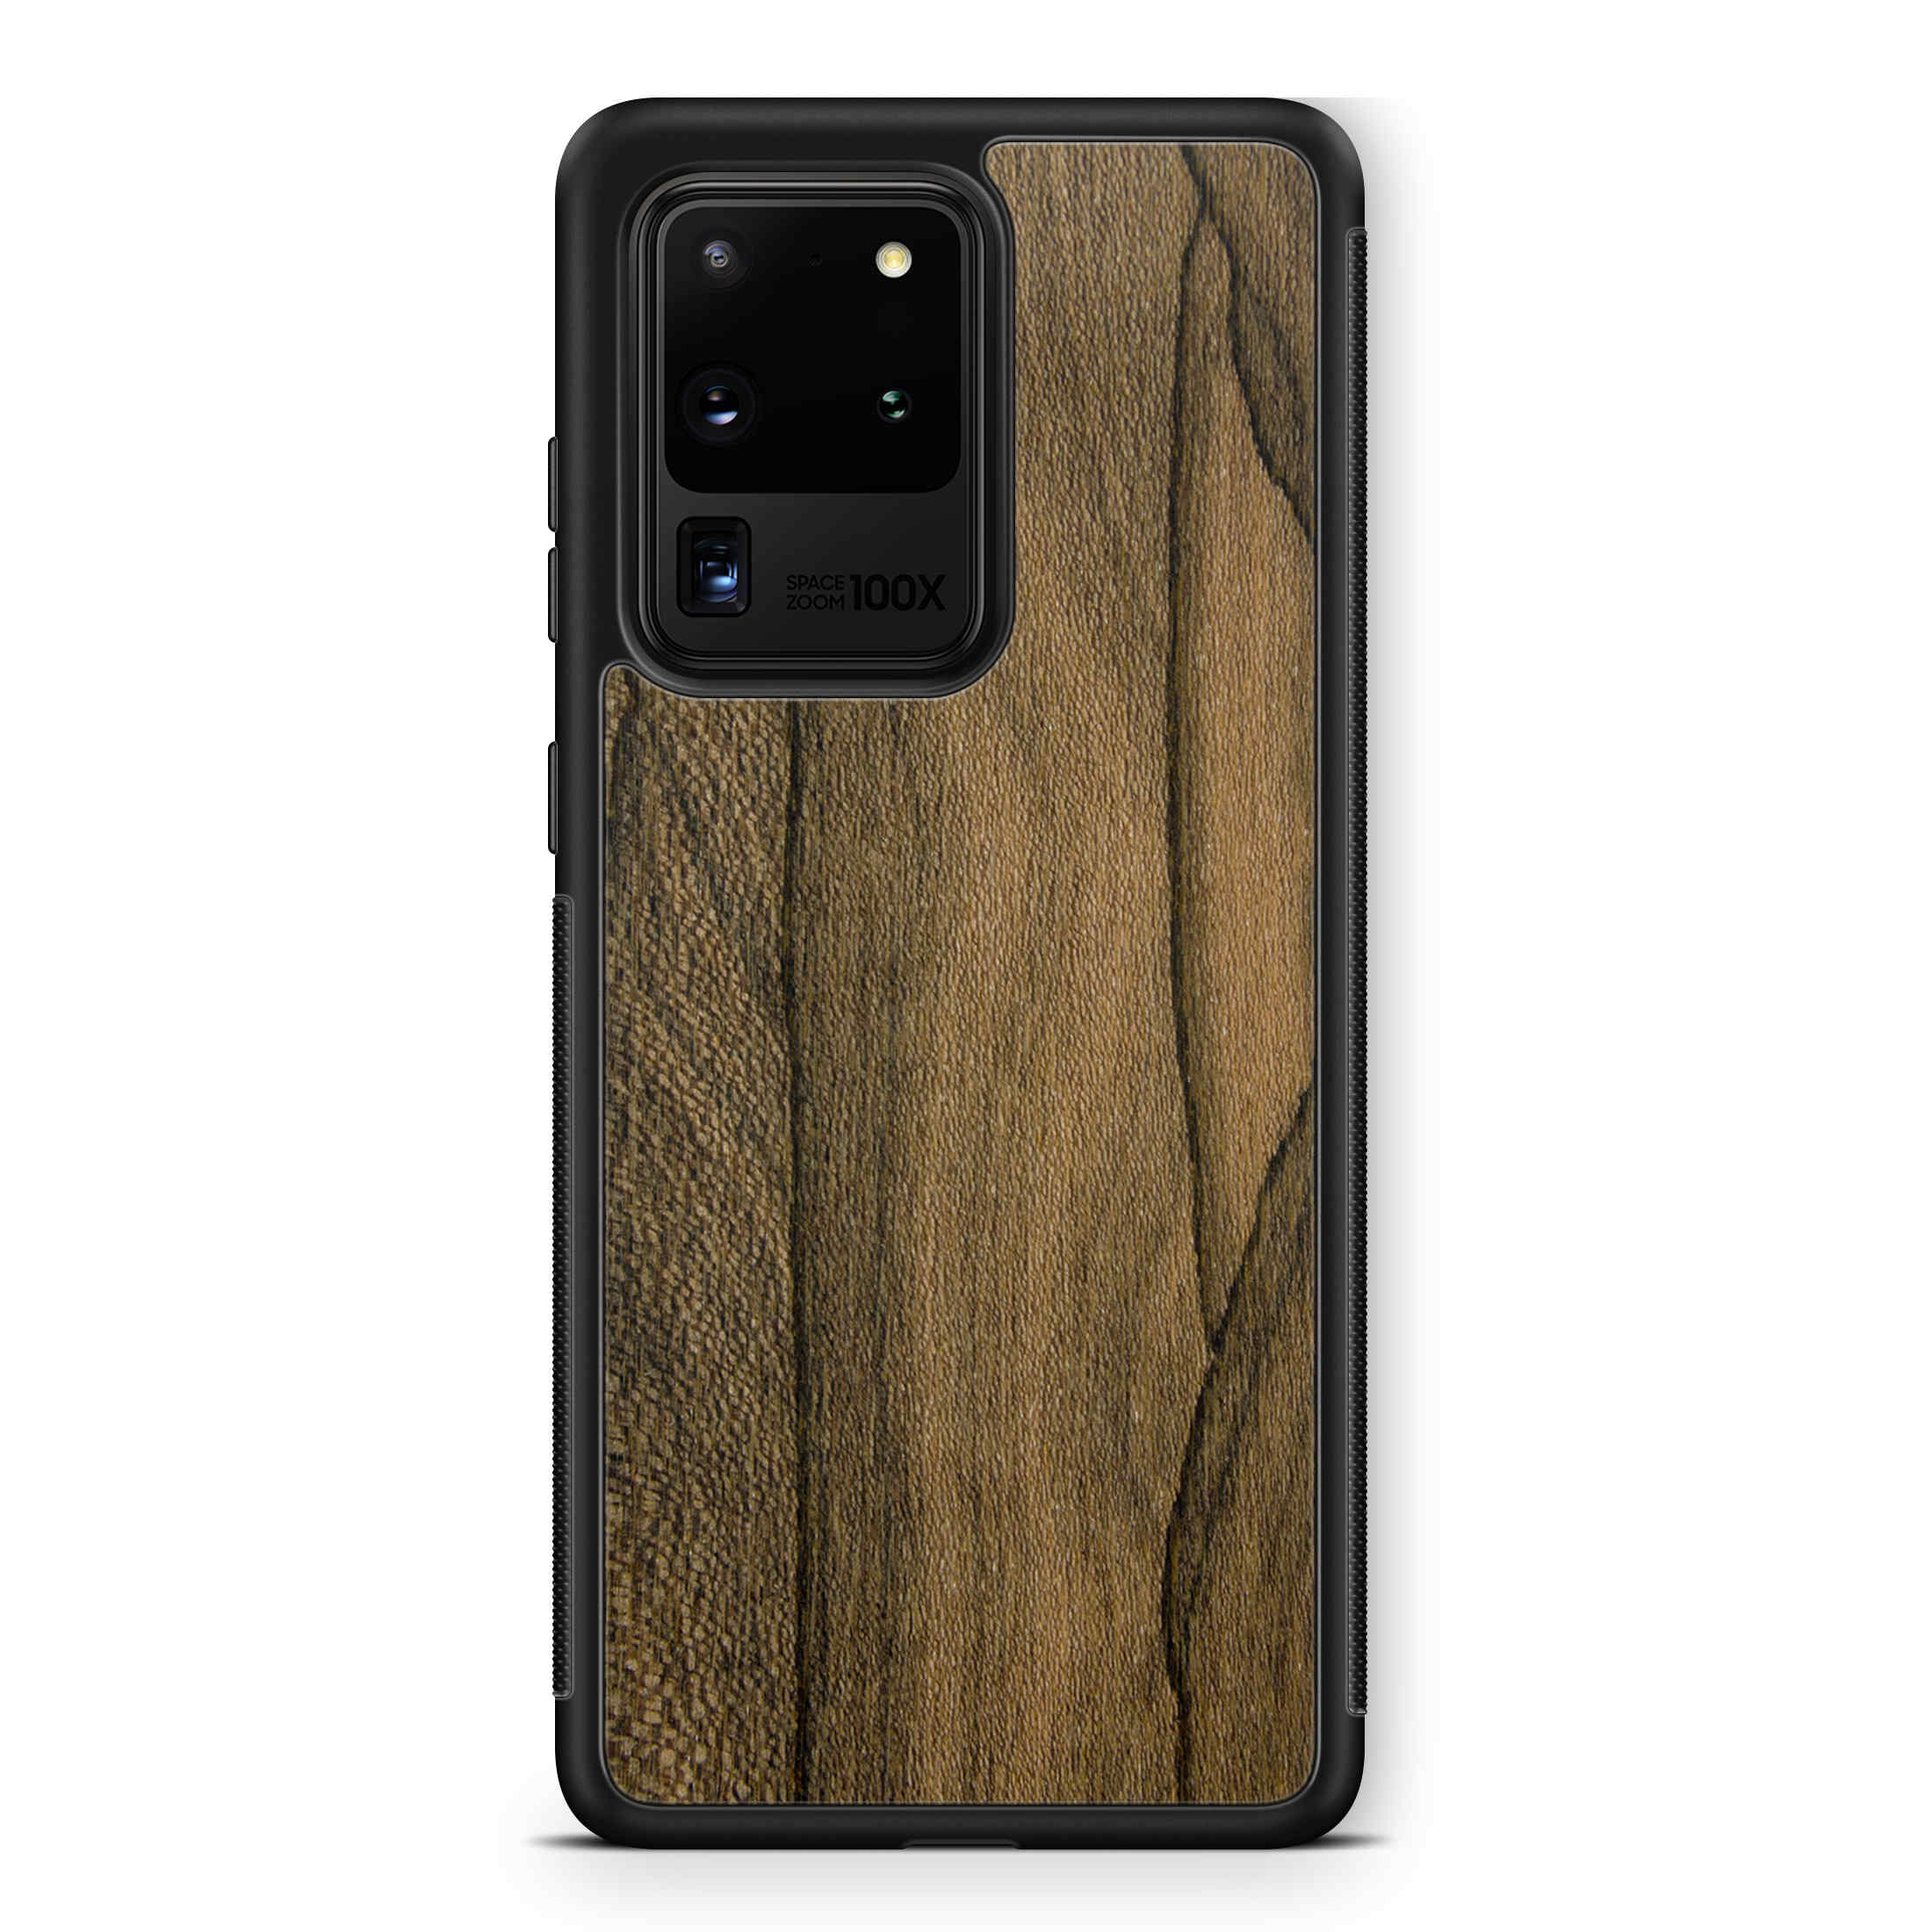 Funda para teléfono Samsung S20 Ultra de madera de ziricote